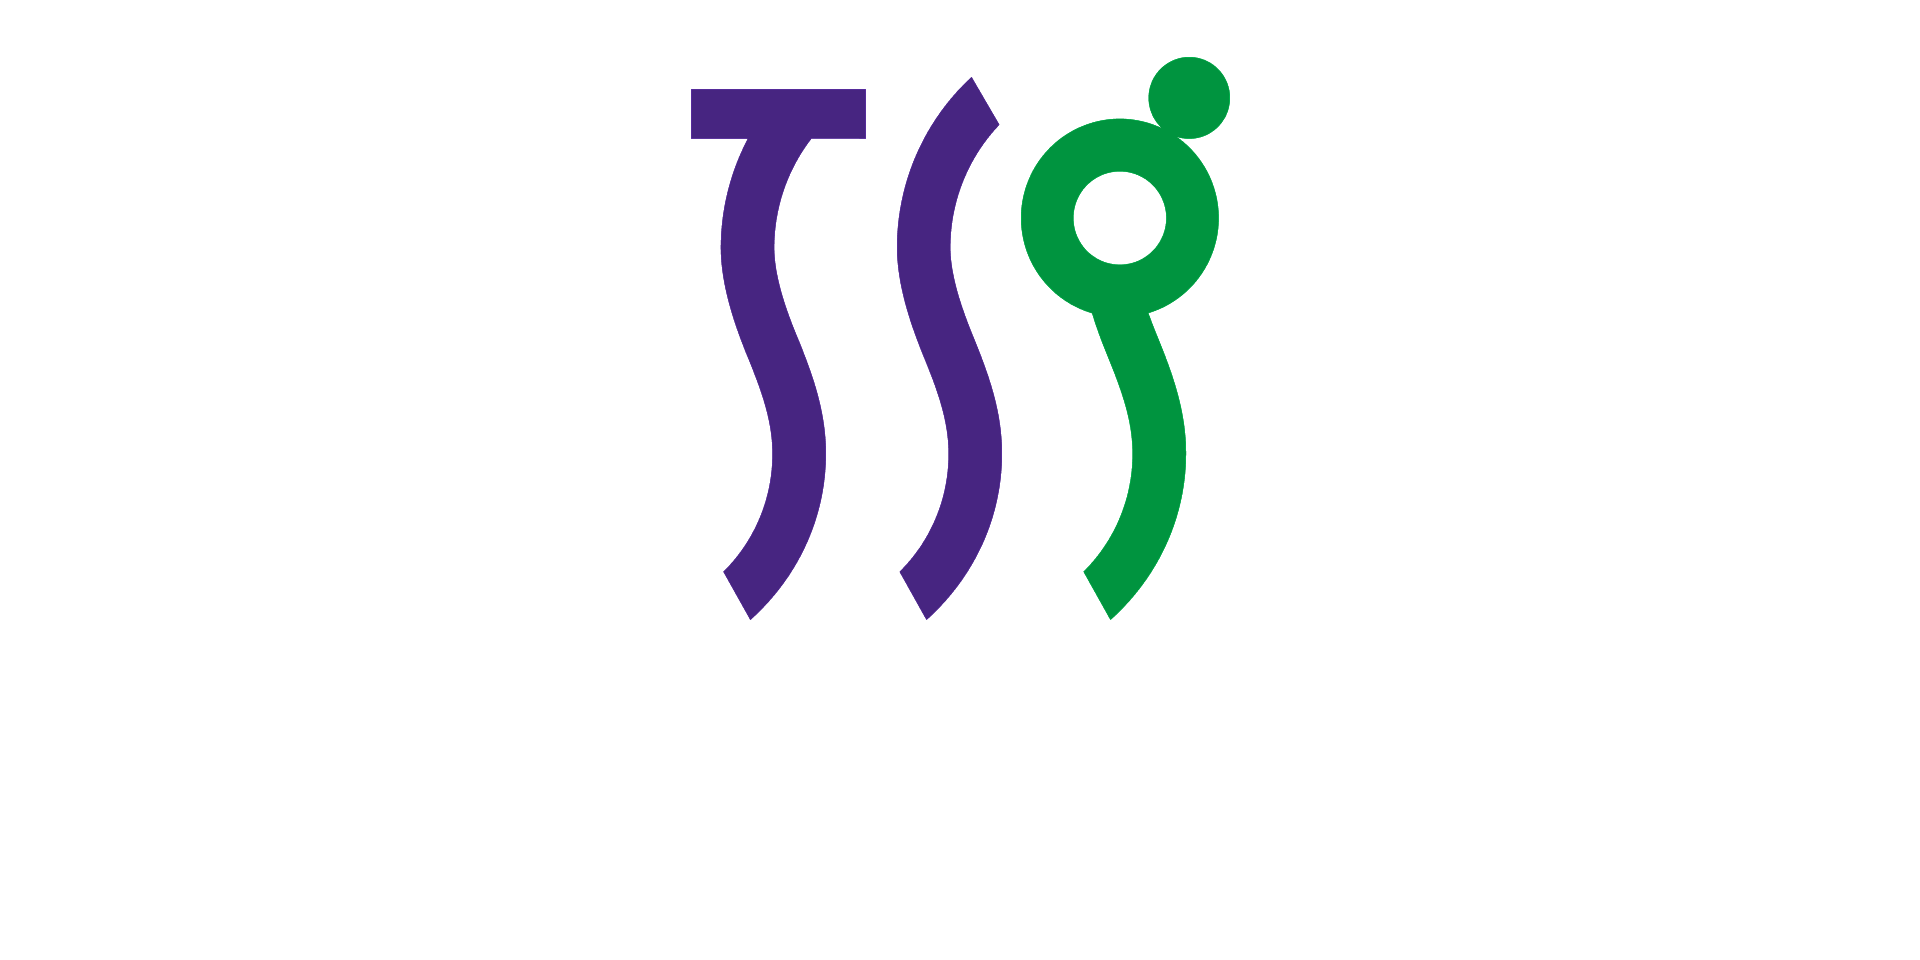 TOYO SASAKI GLASS